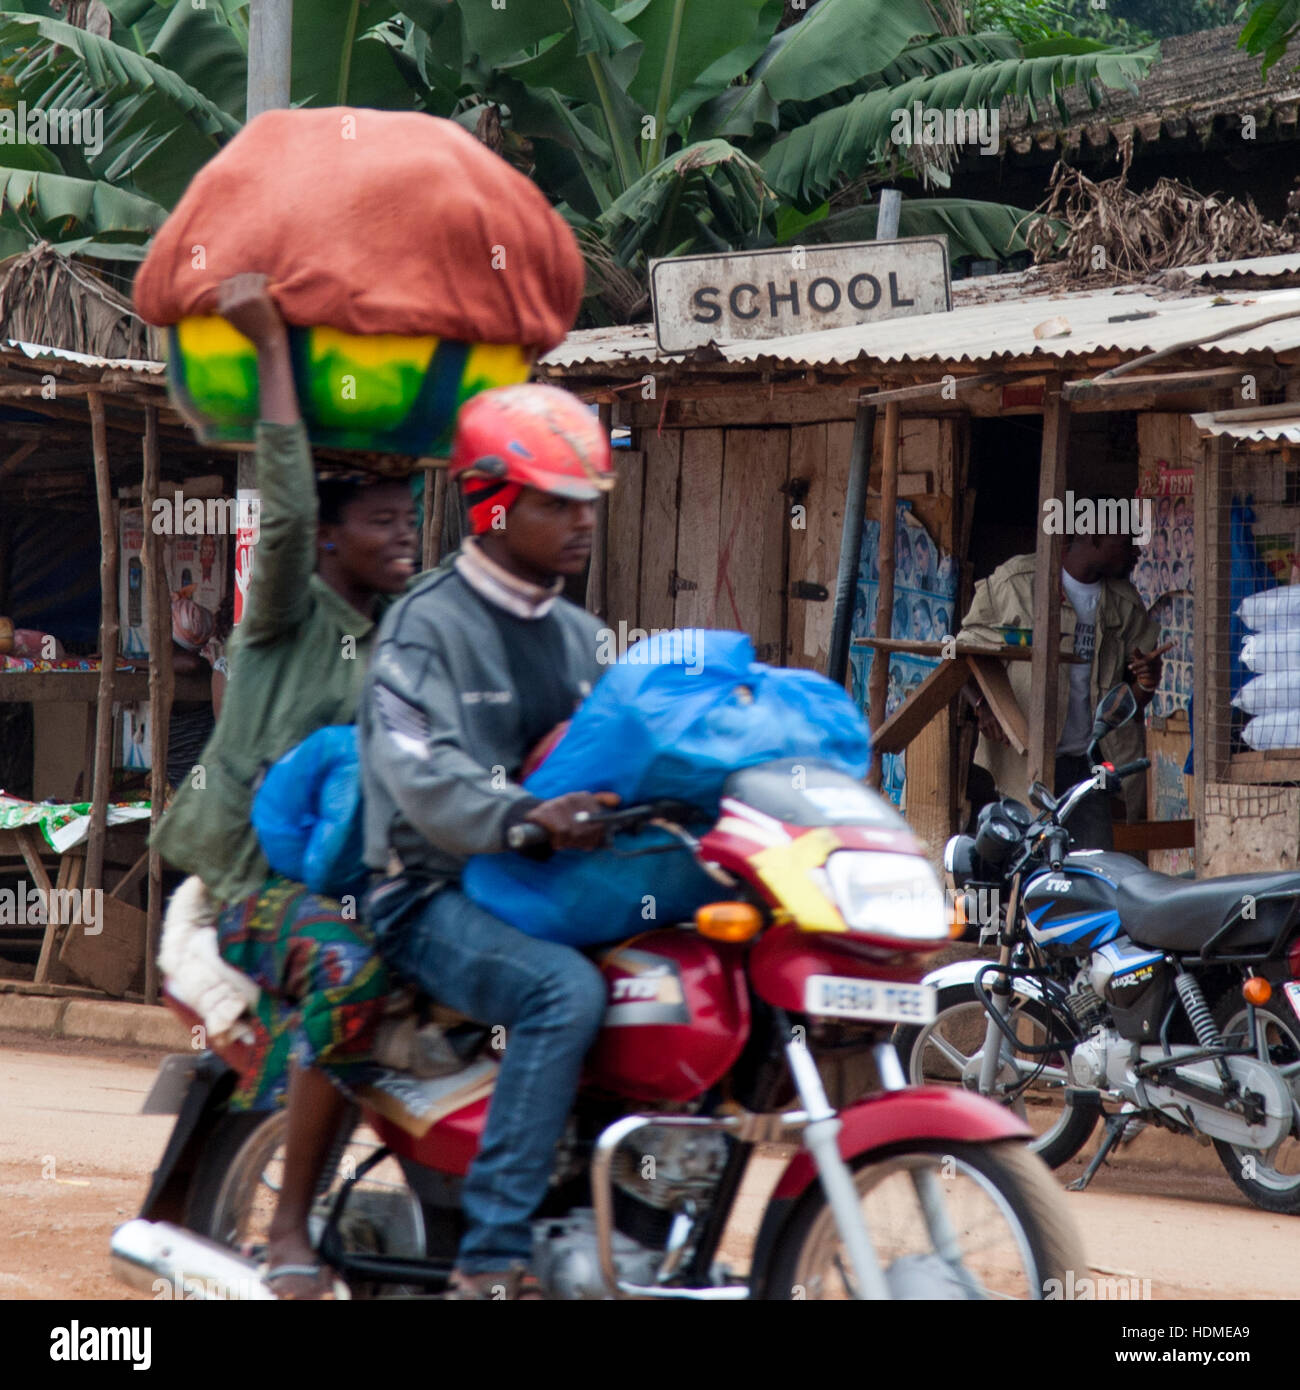 Okada in front of a school in Sierra Leone Stock Photo